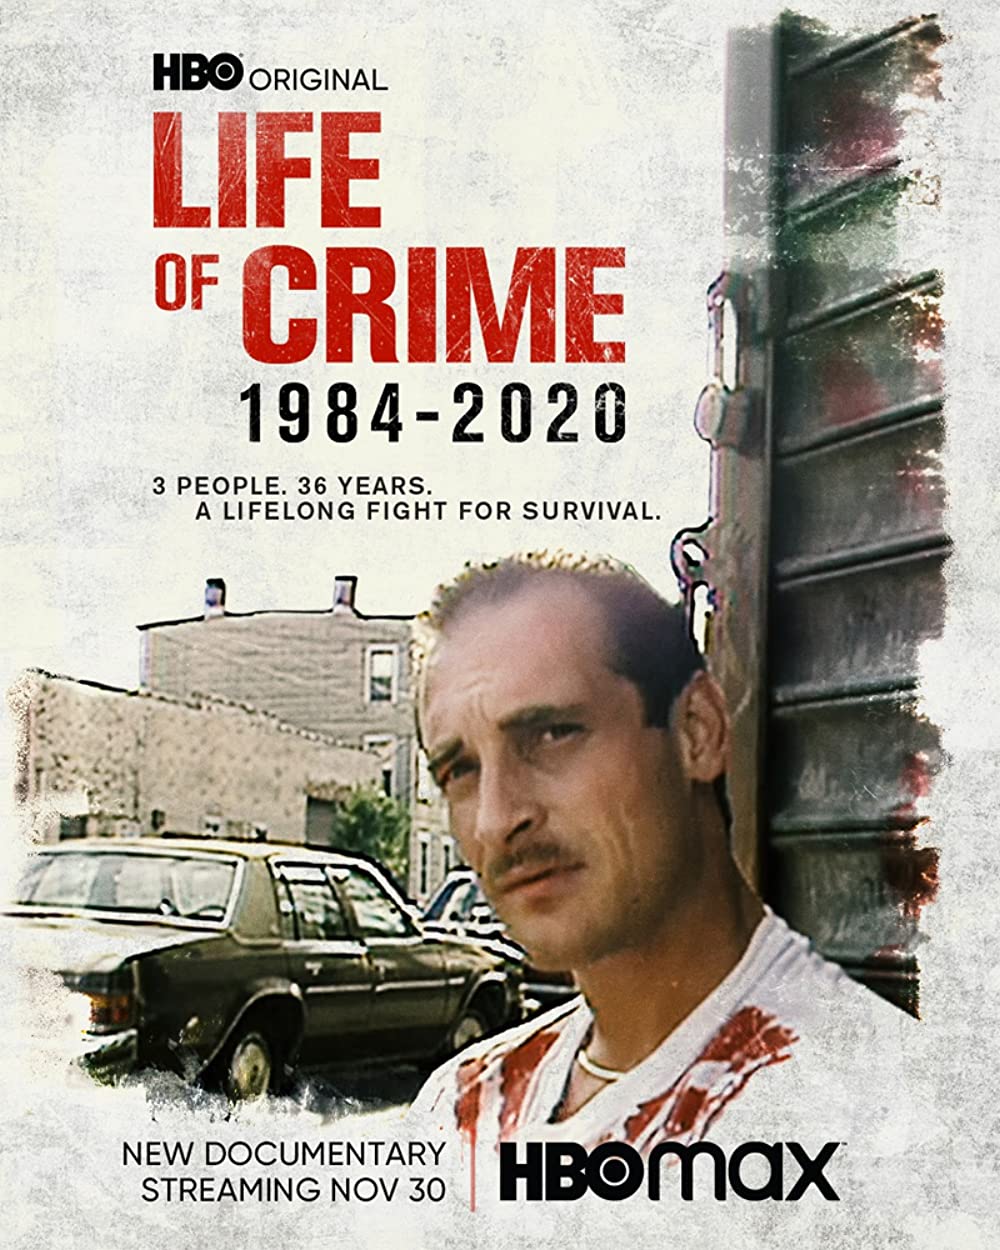 ดูหนังออนไลน์ Life of Crime 1984-2020 (2021) ไลฟ ออฟ ไครมฺ 1984-2020